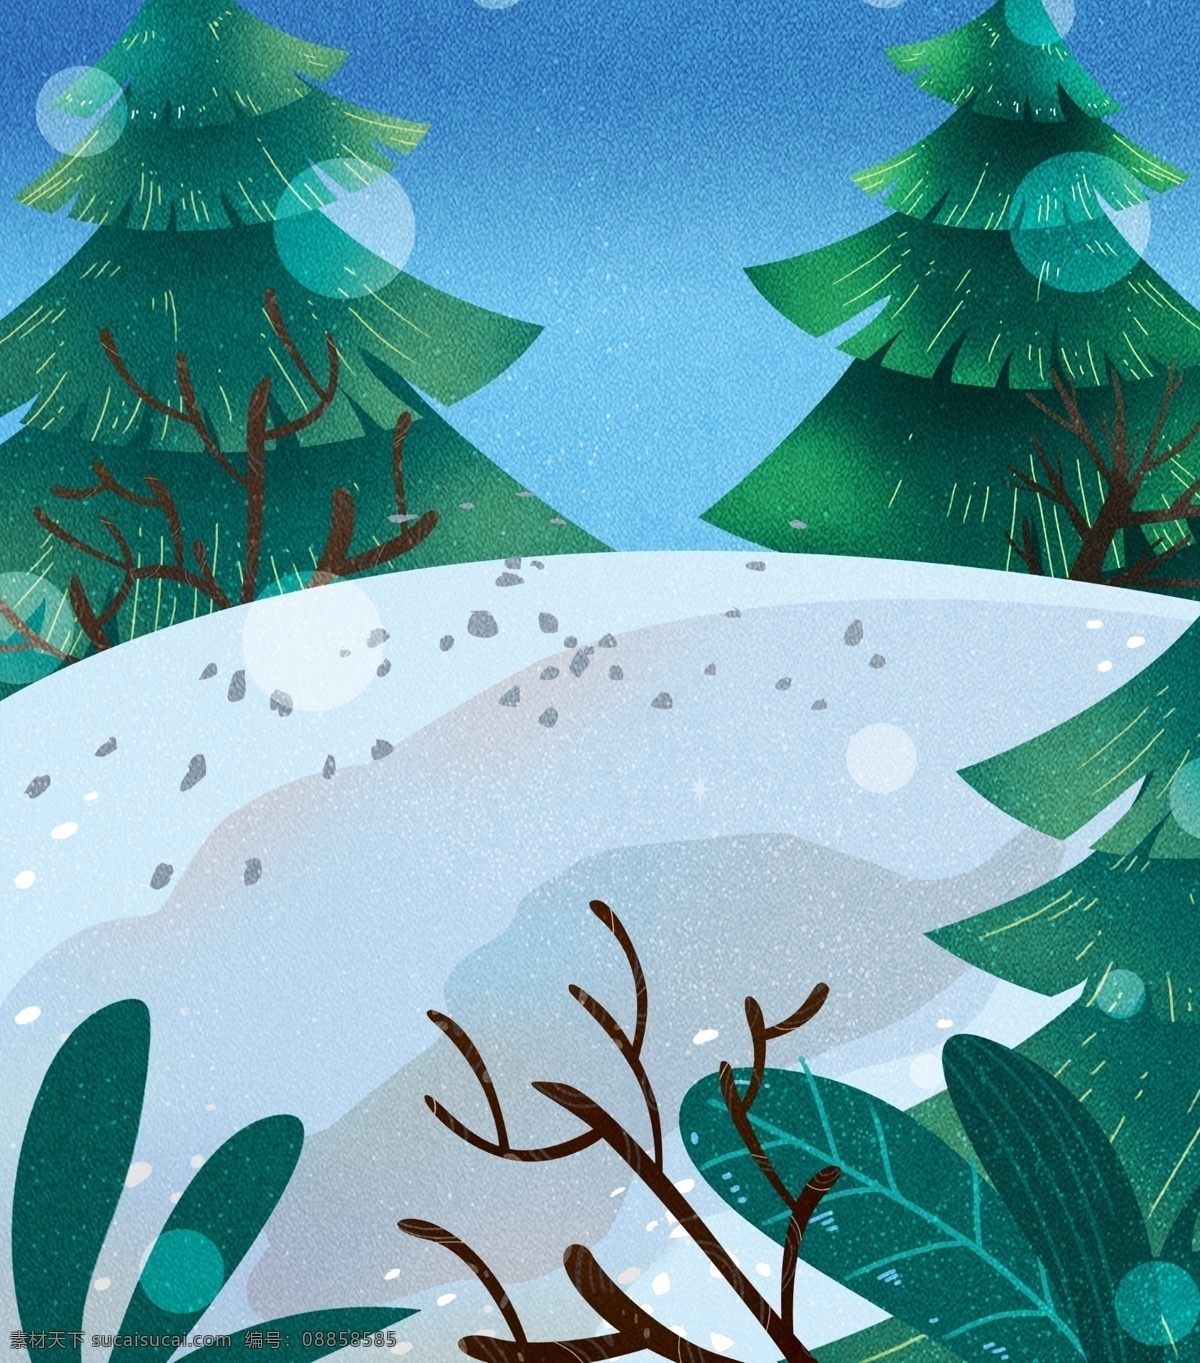 唯美 冬至 树木 背景 卡通冬季 冬天来了 小雪 大雪 冬天背景设计 清新水彩雪景